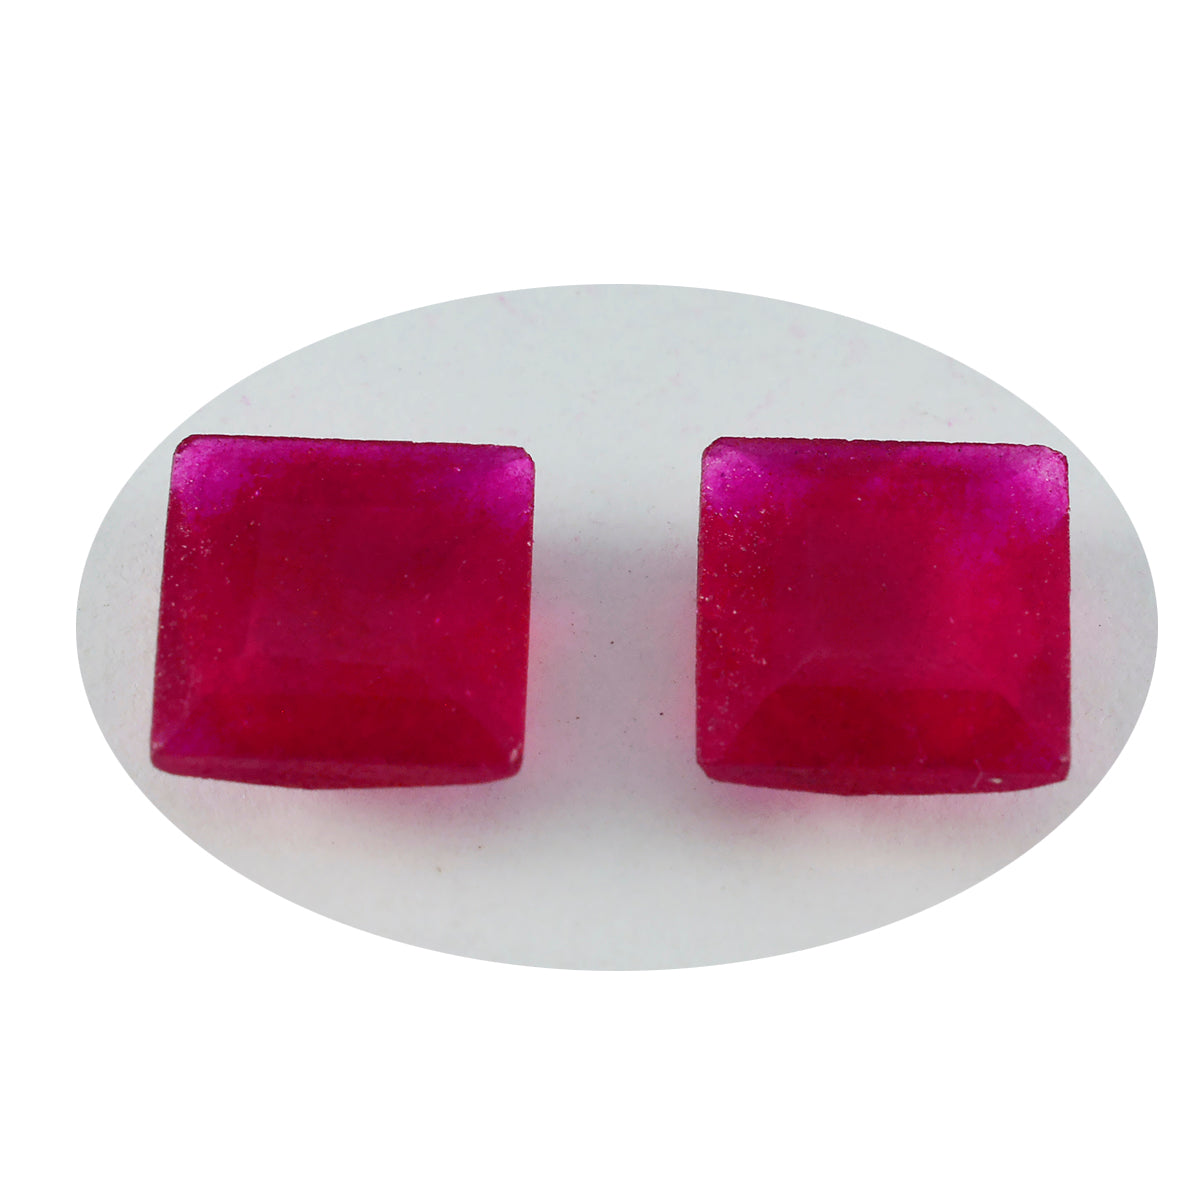 Riyogems, 1 pieza, jaspe rojo auténtico facetado, 14x14mm, forma cuadrada, gema suelta de excelente calidad